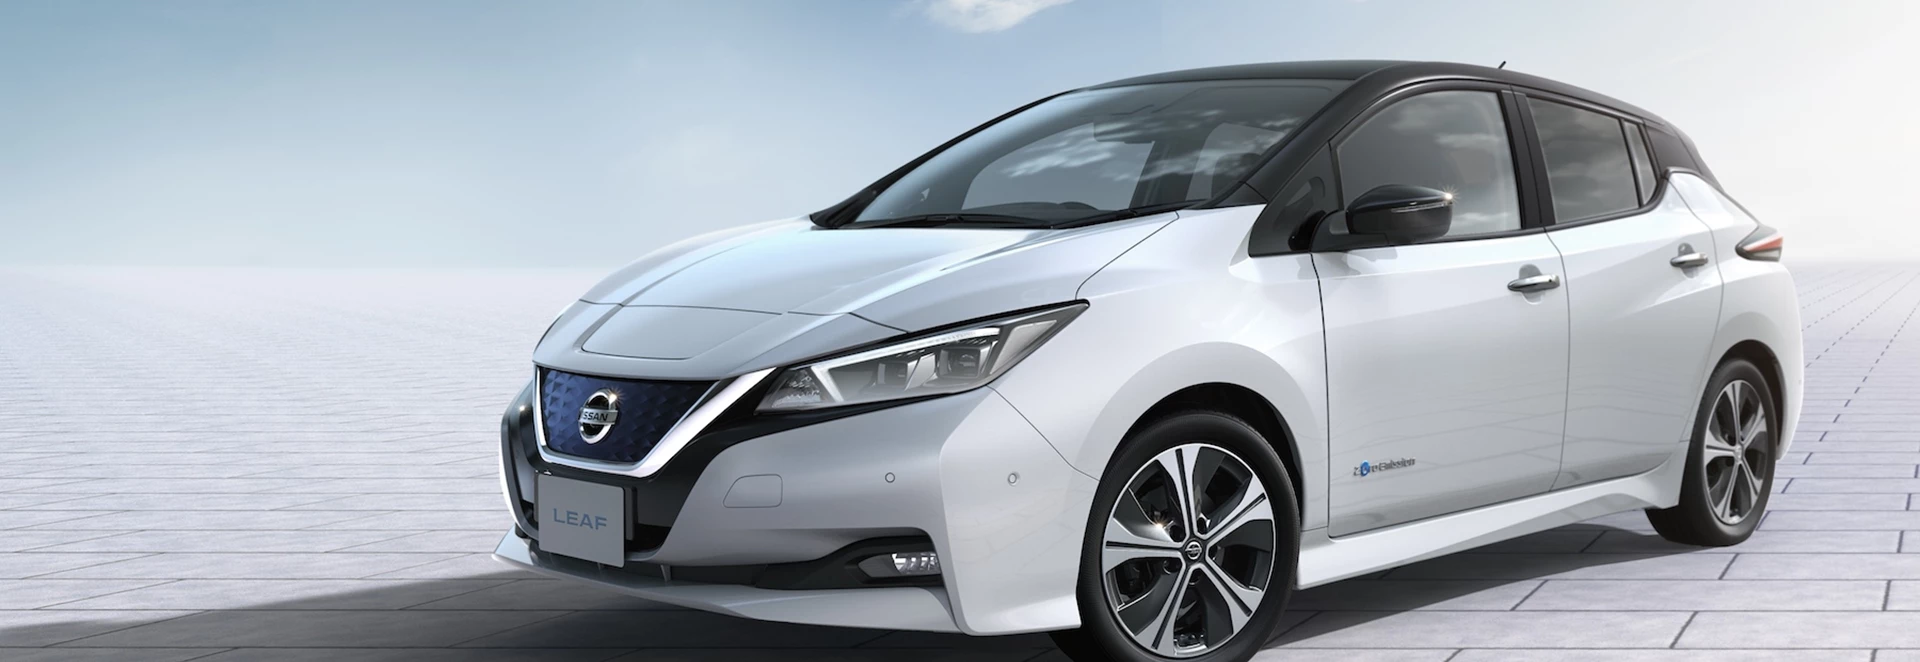 2018 Nissan Leaf EV revealed for the European market 